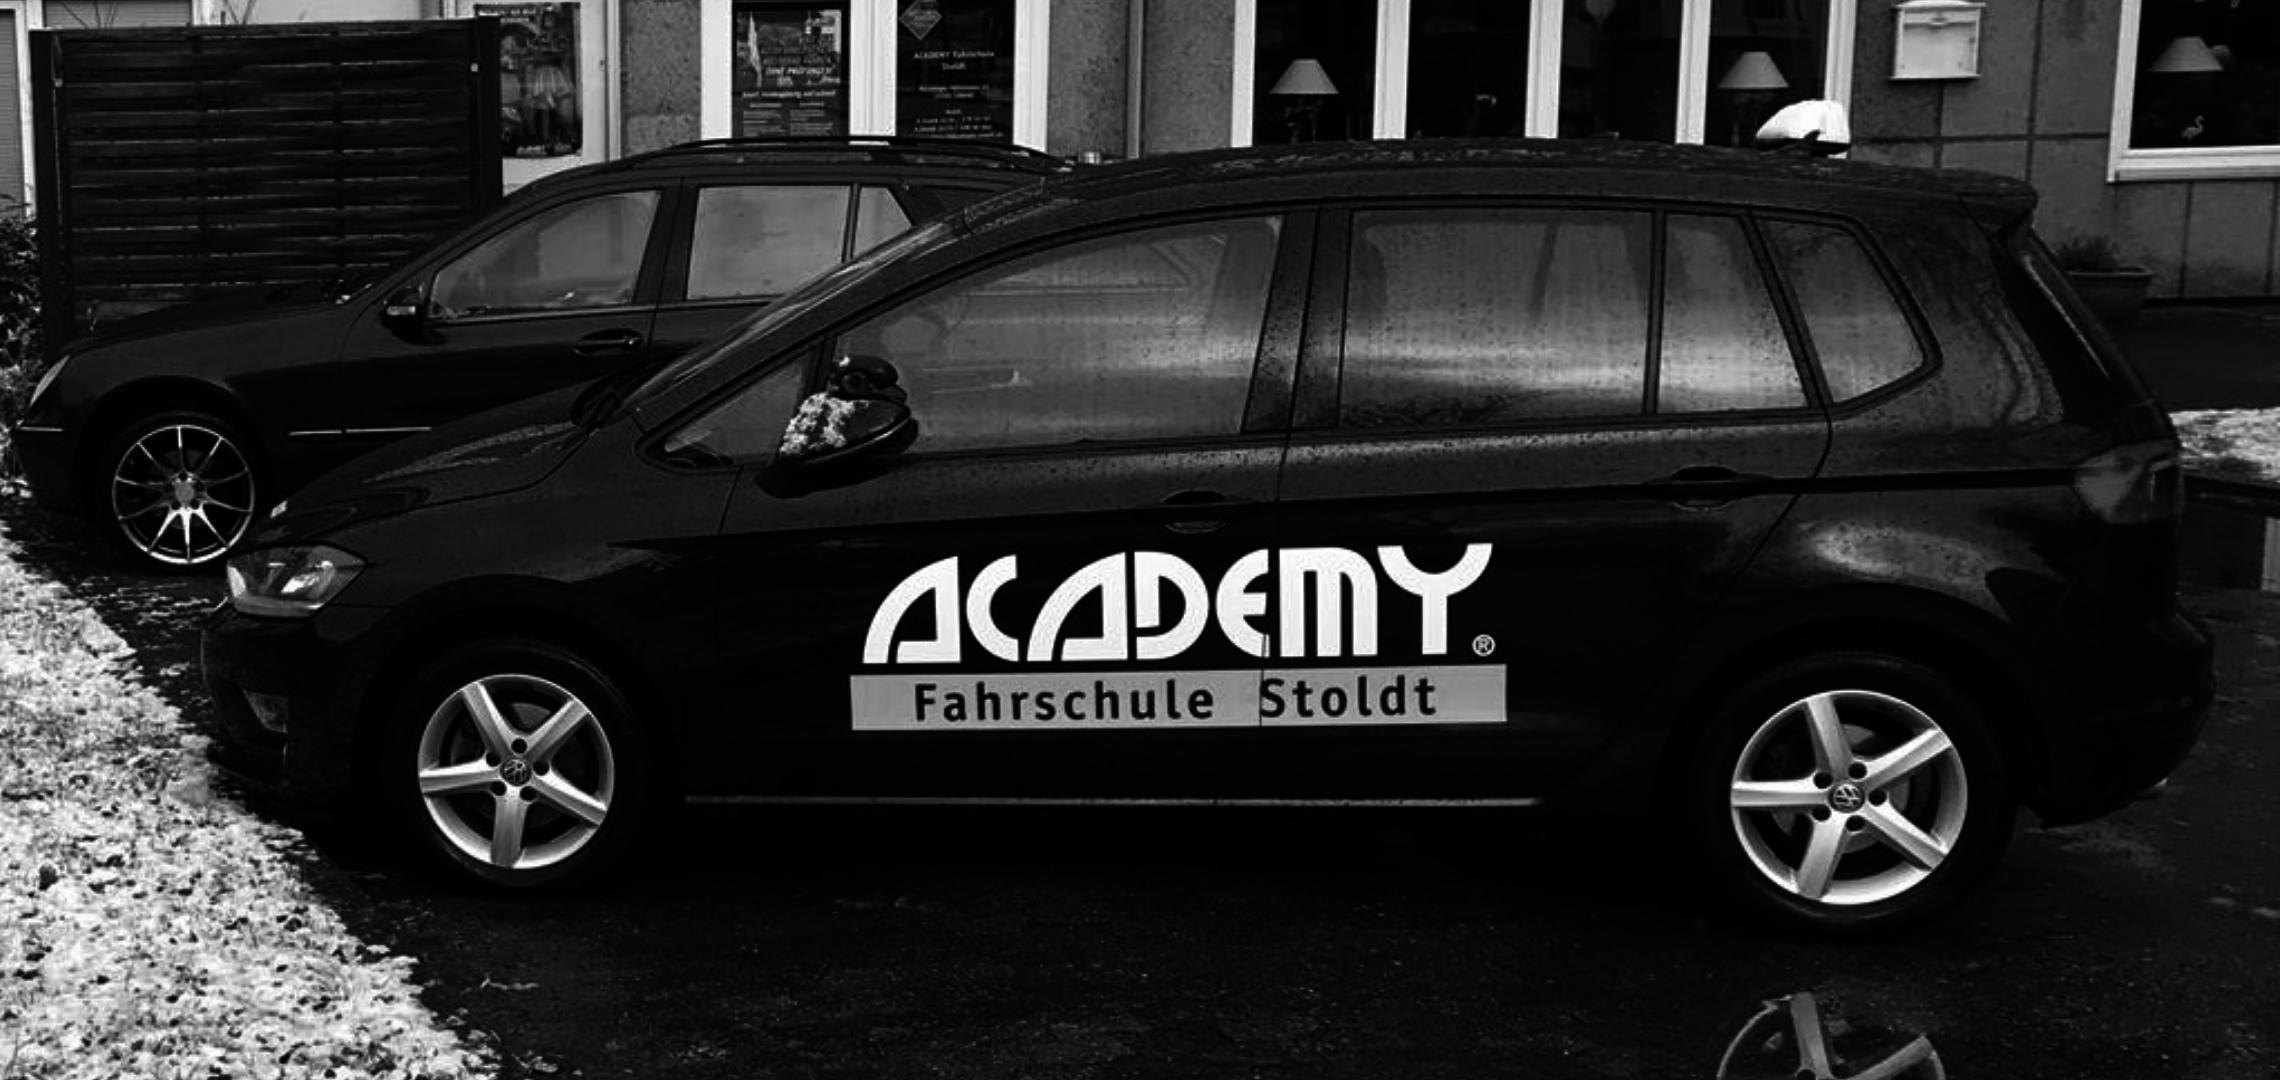 ACADEMY Fahrschule VW Golf Sportsvan Automatik